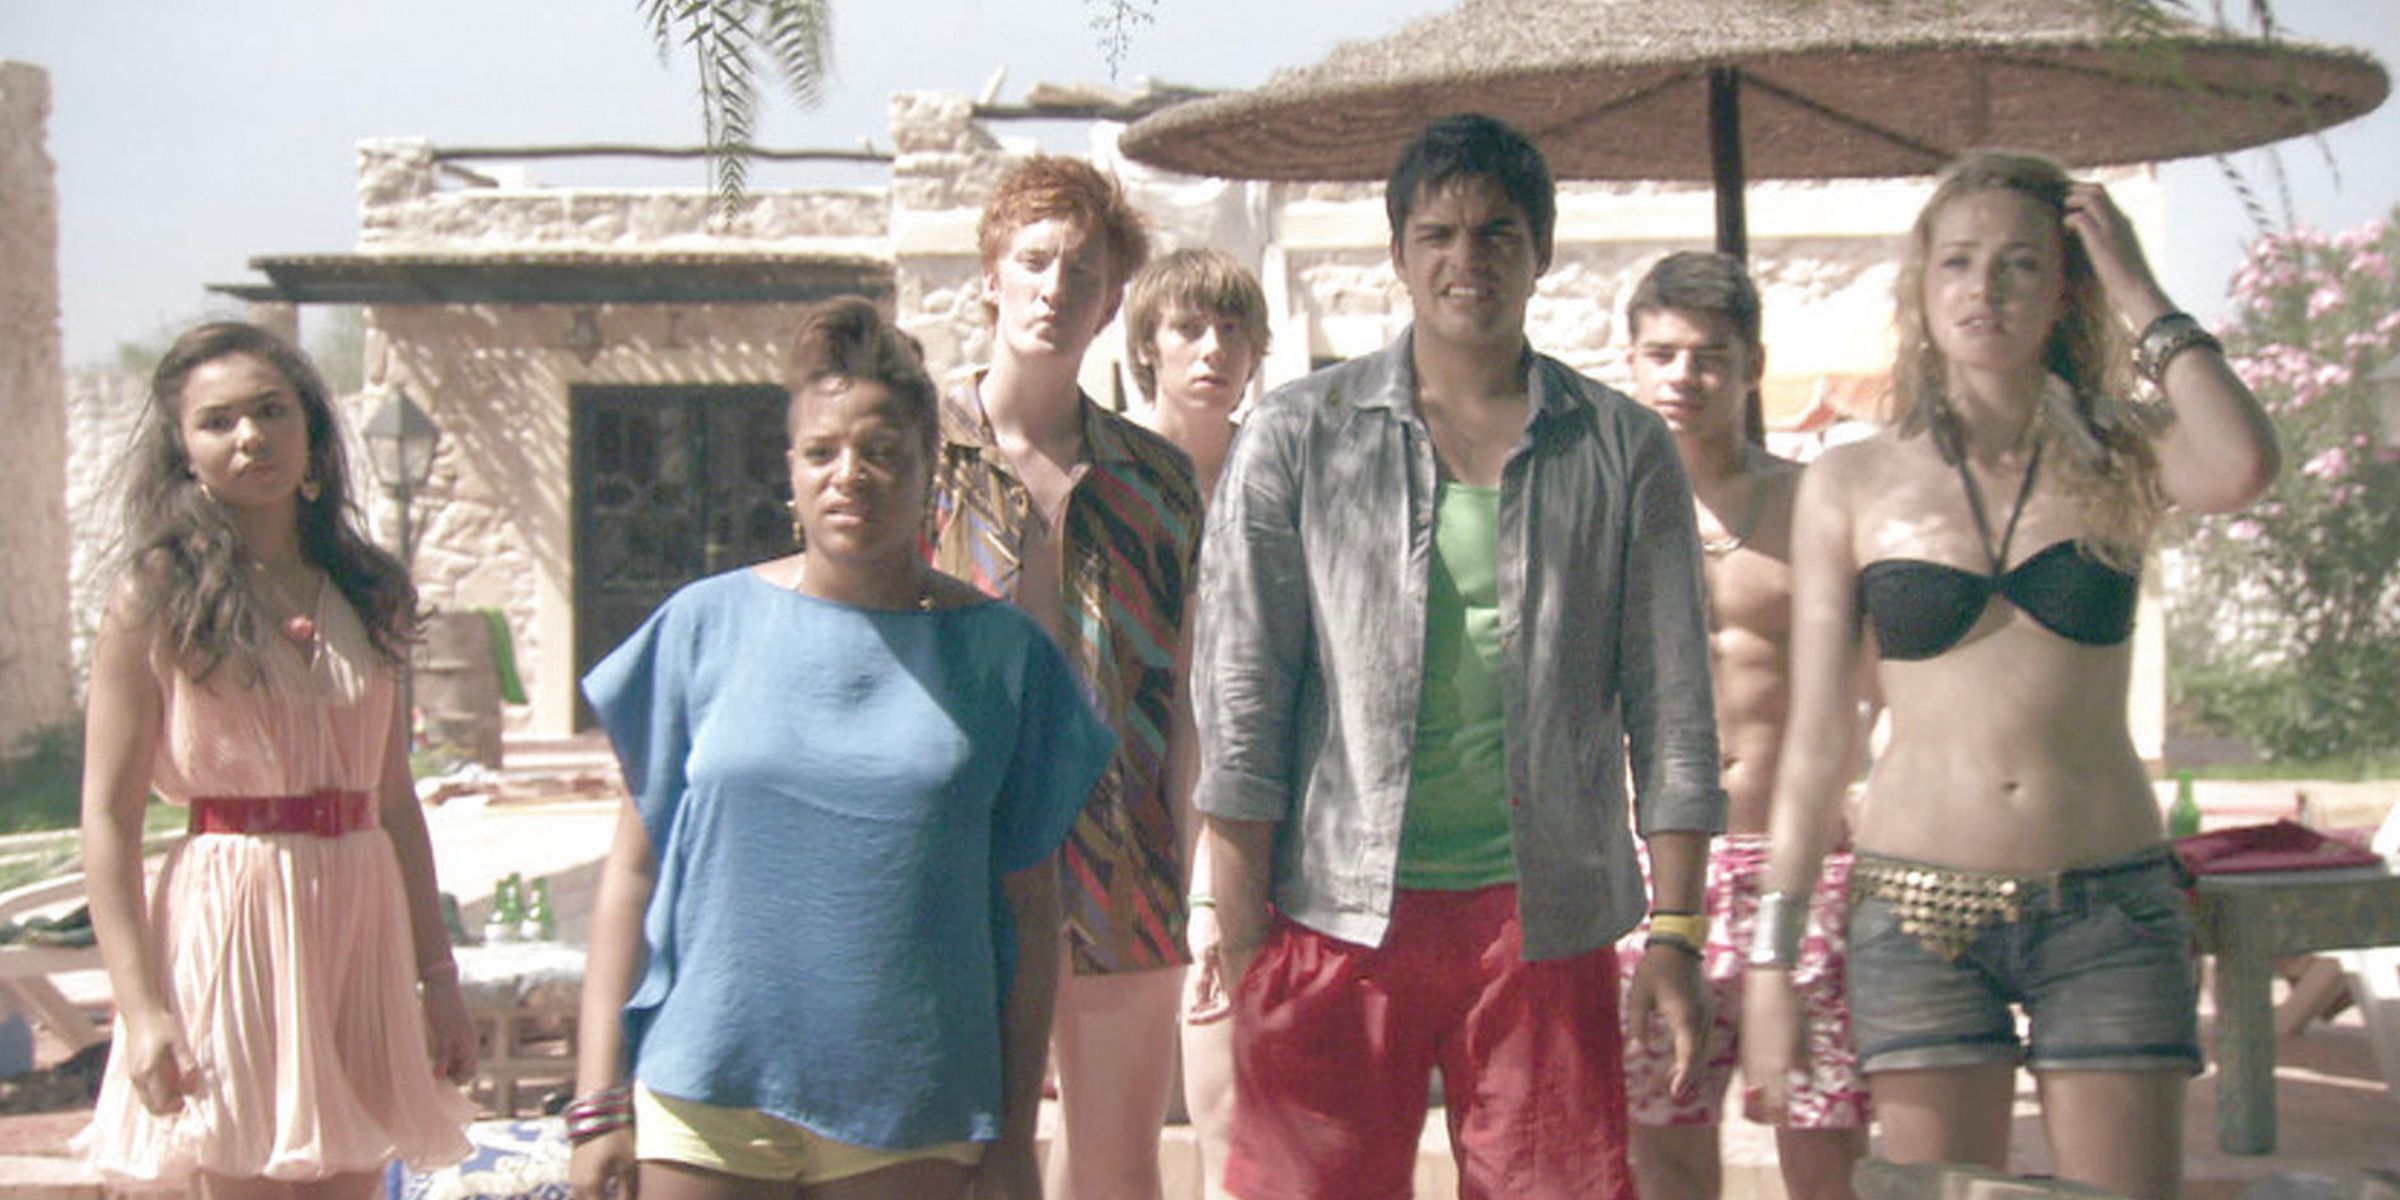 7 teenagers of the third generation of Skins cast members in beach wear in Season 6